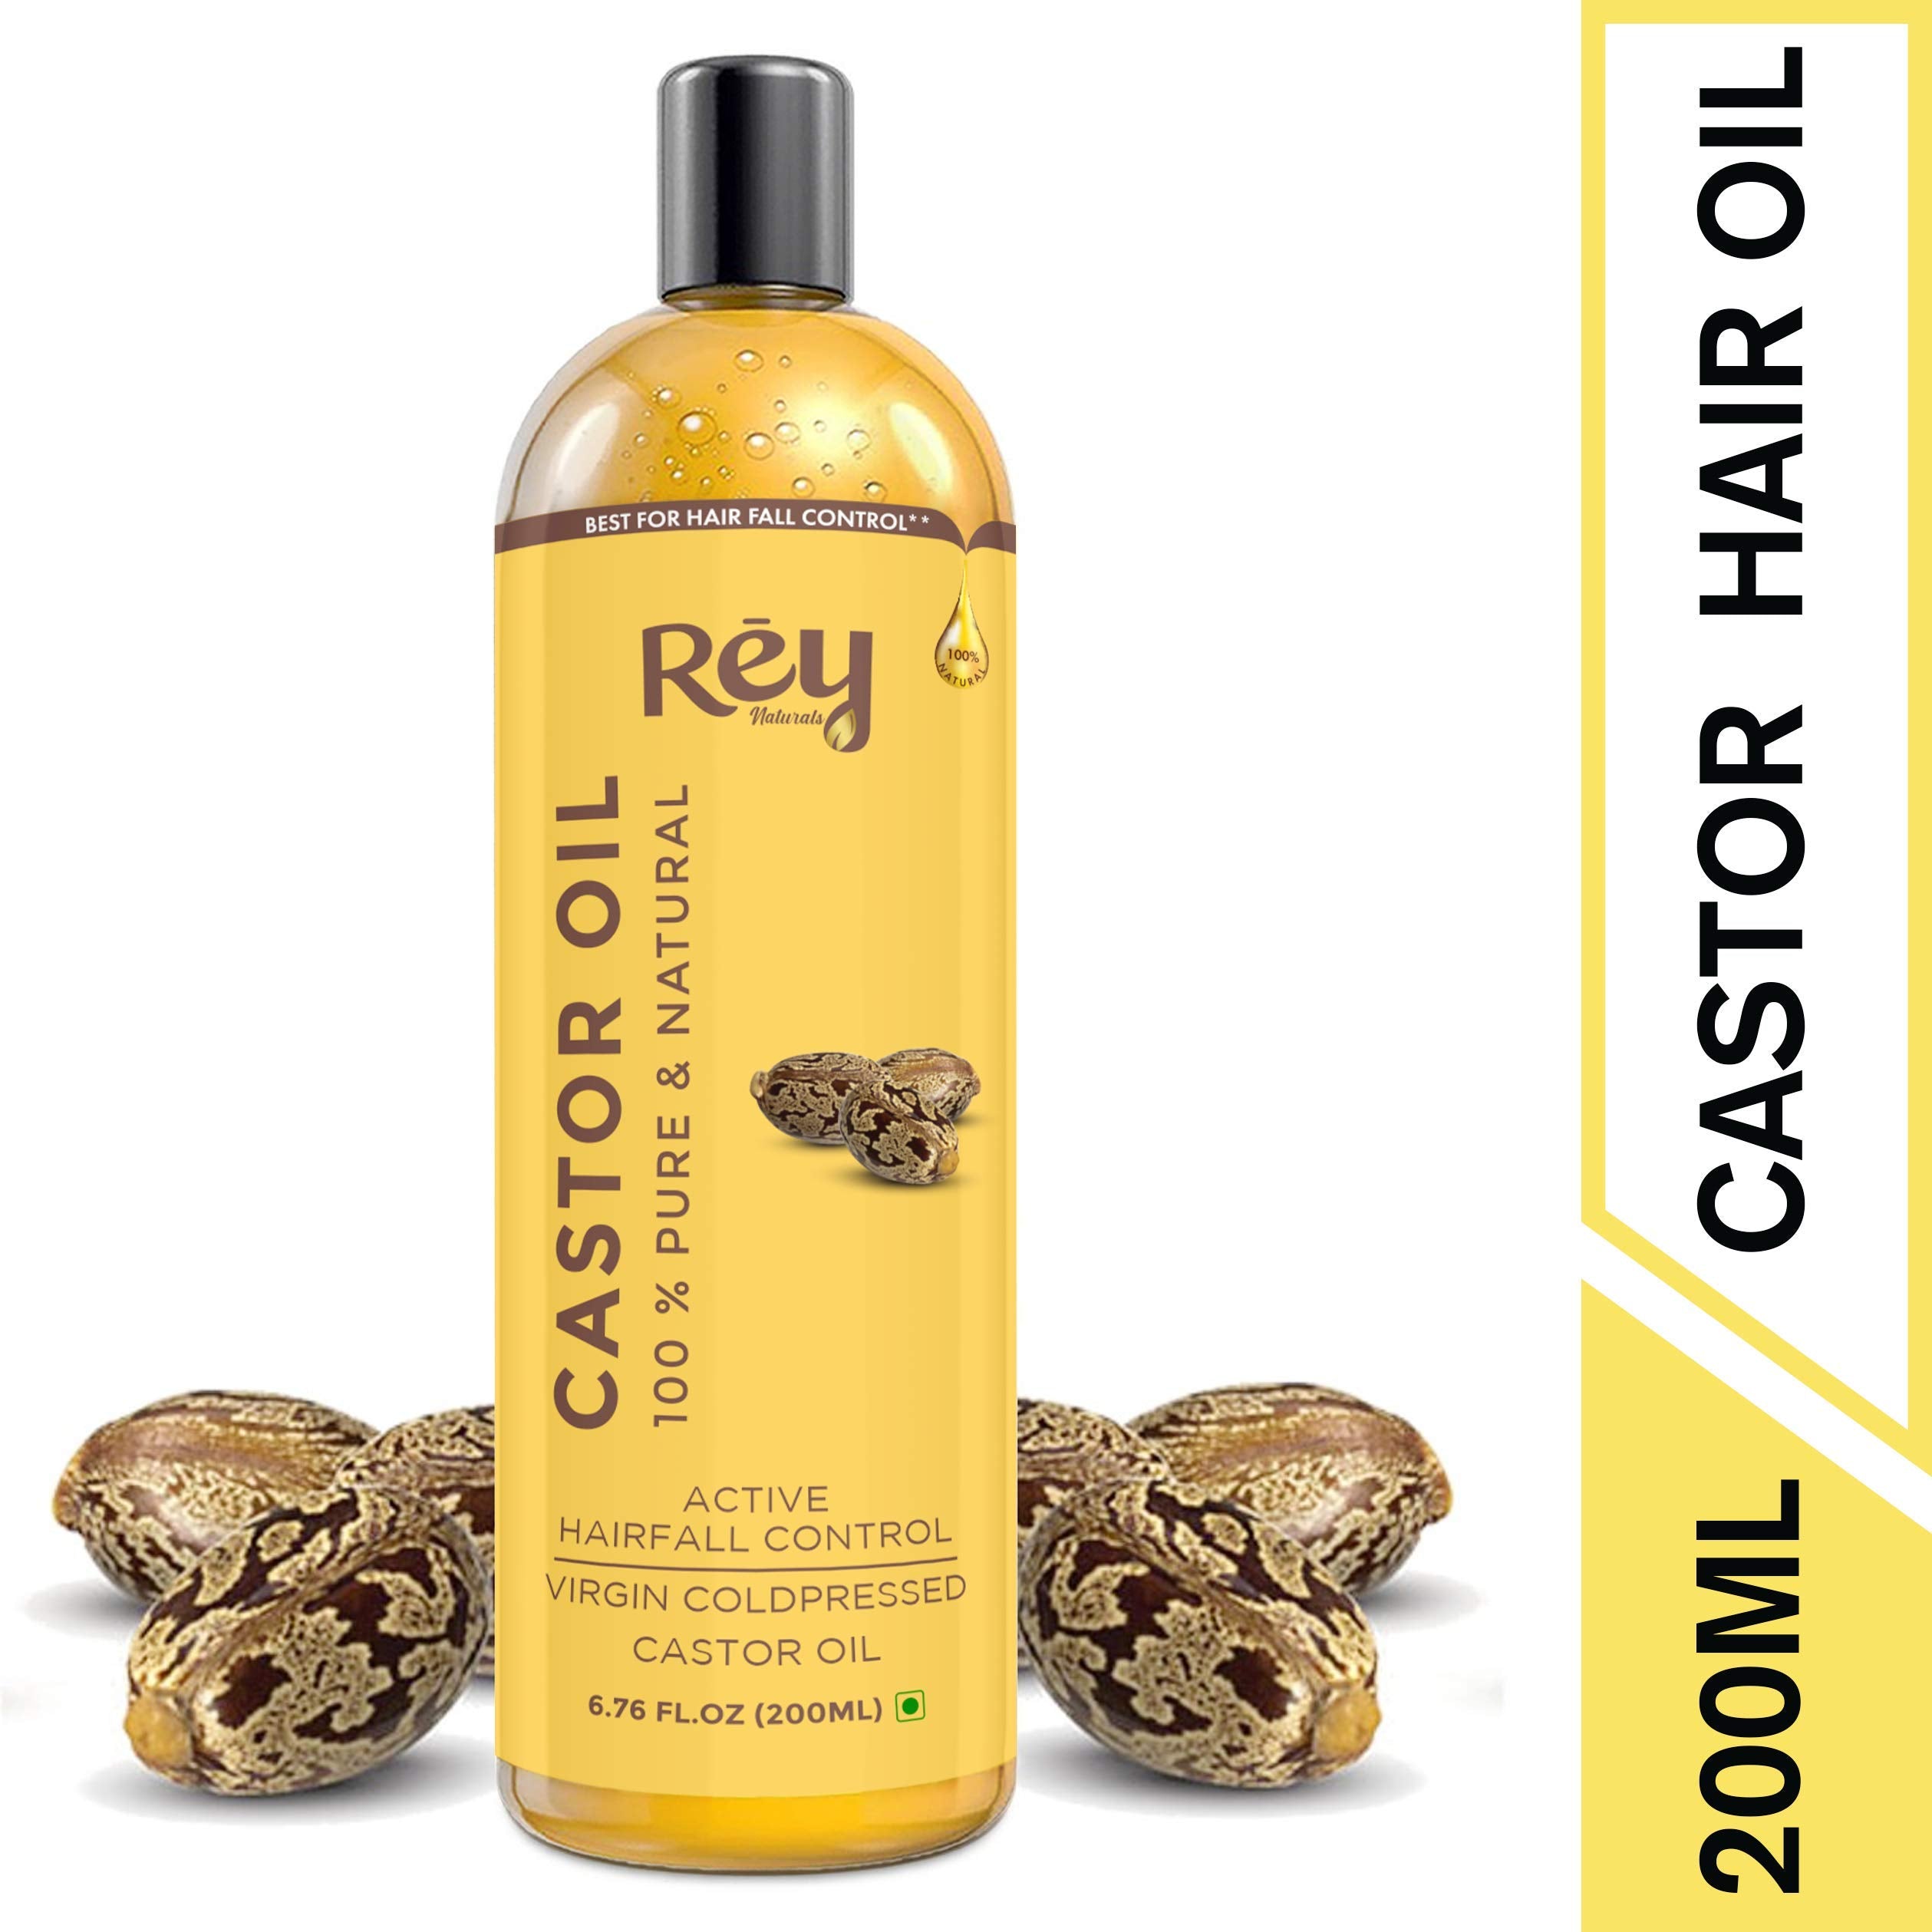 rey castor oil reviews